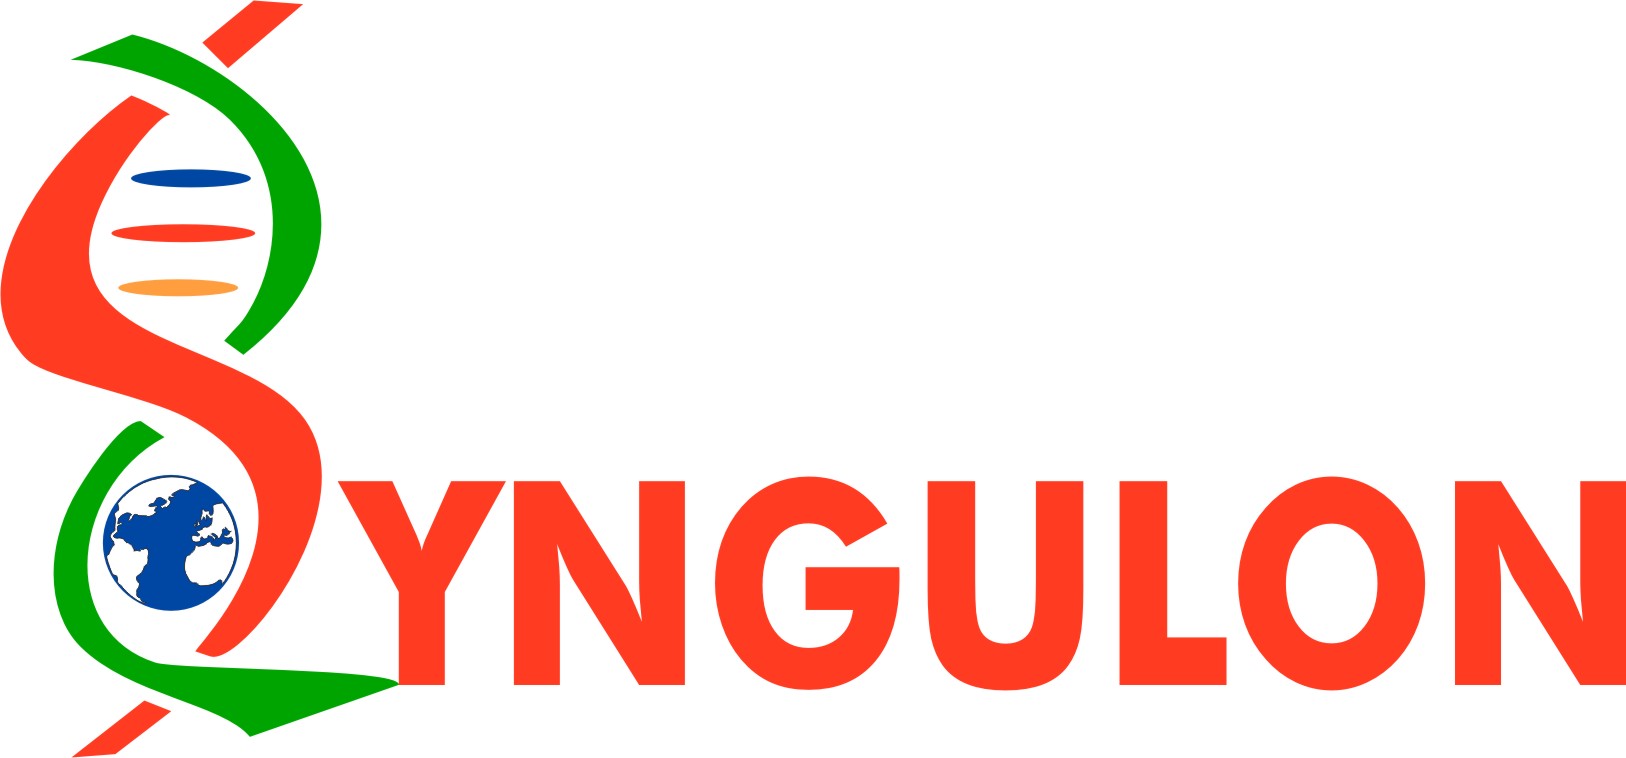 Syngulon logo